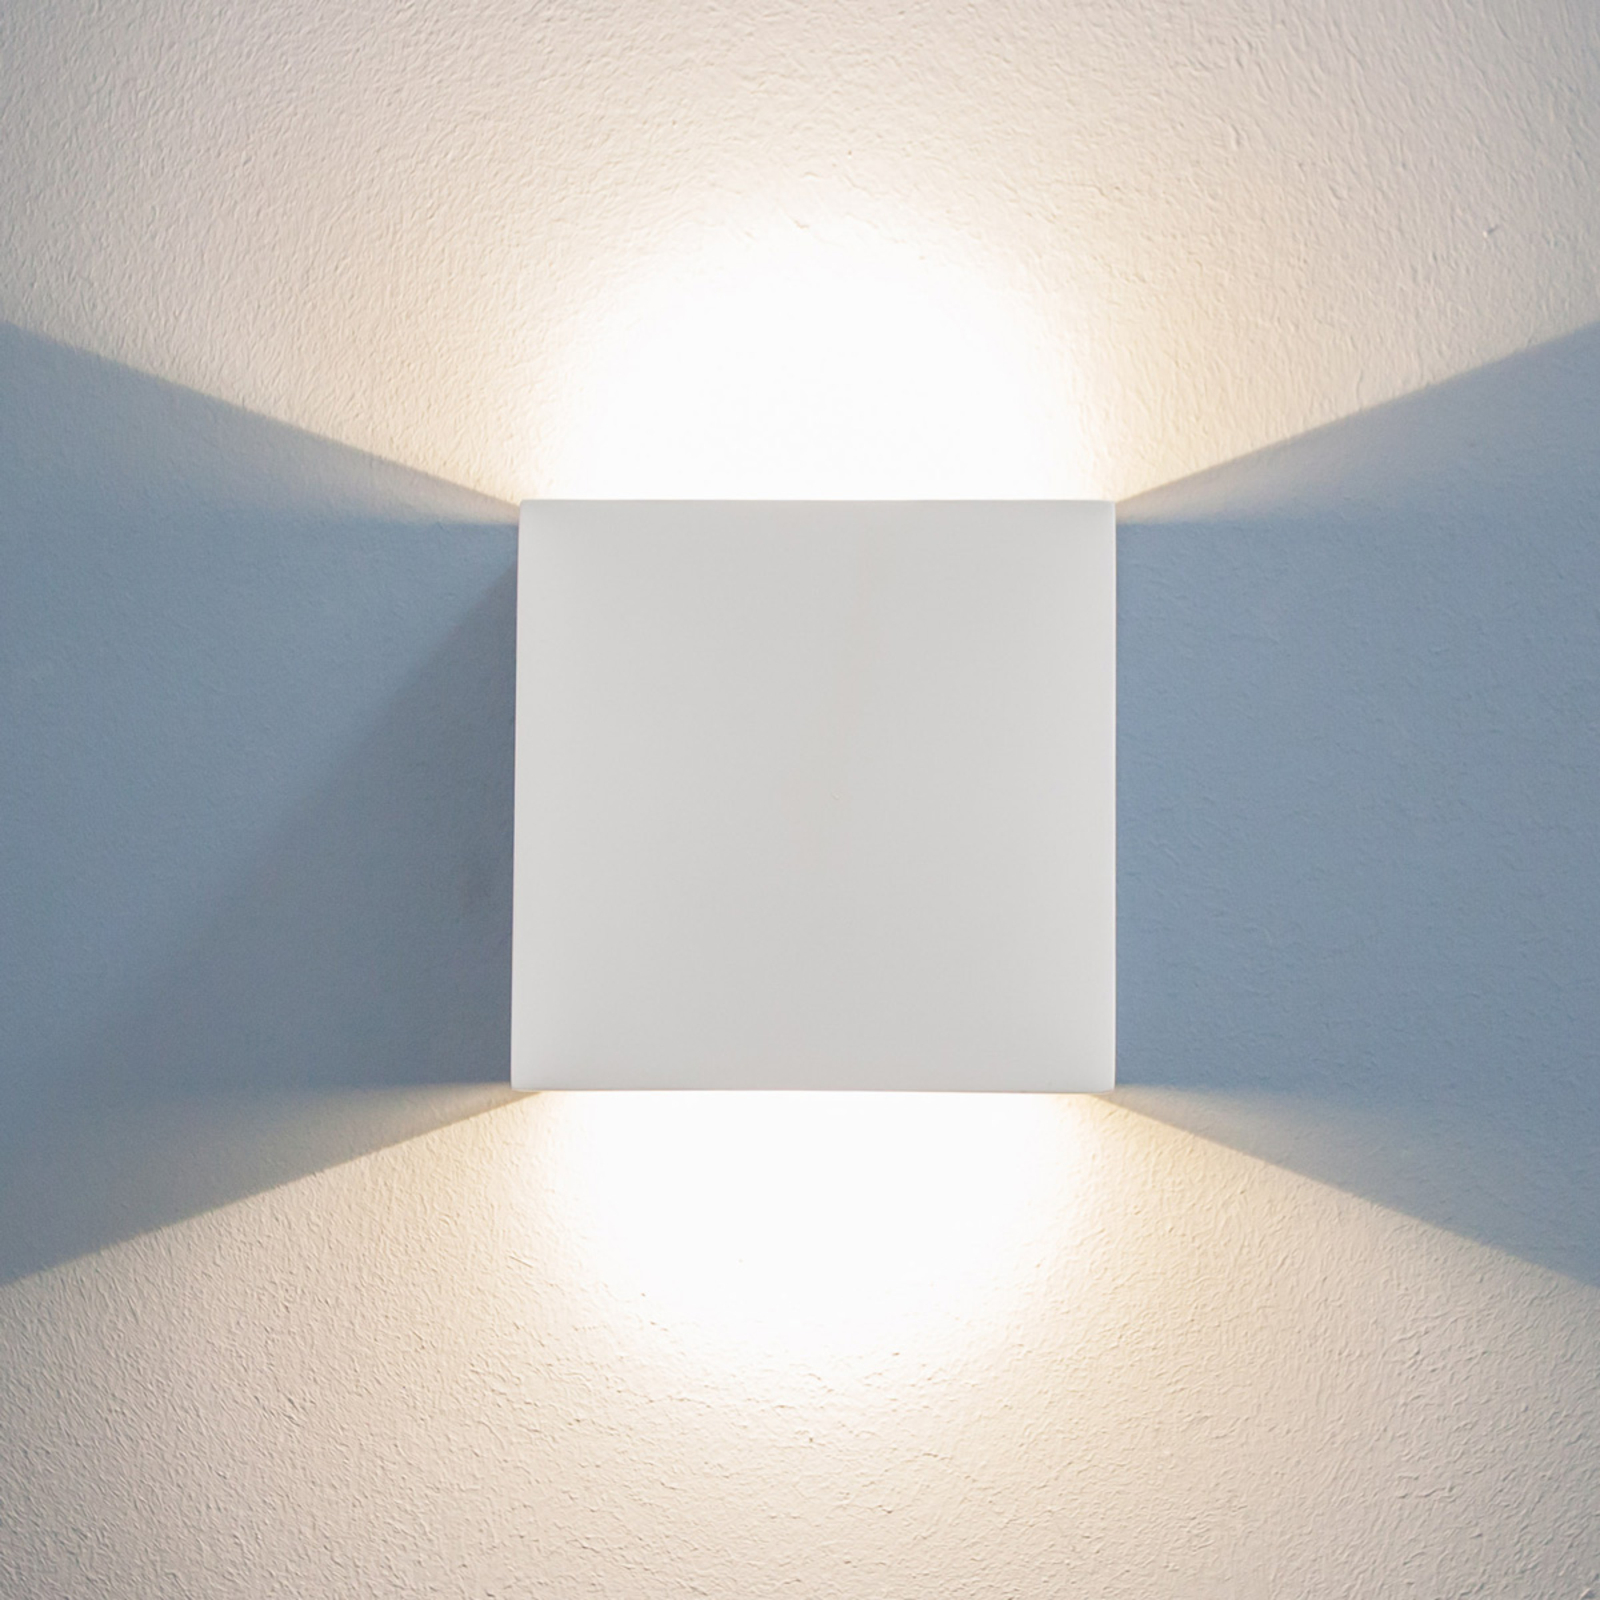 LED-vägglampa Fabiola av gips, höjd 12,5 cm